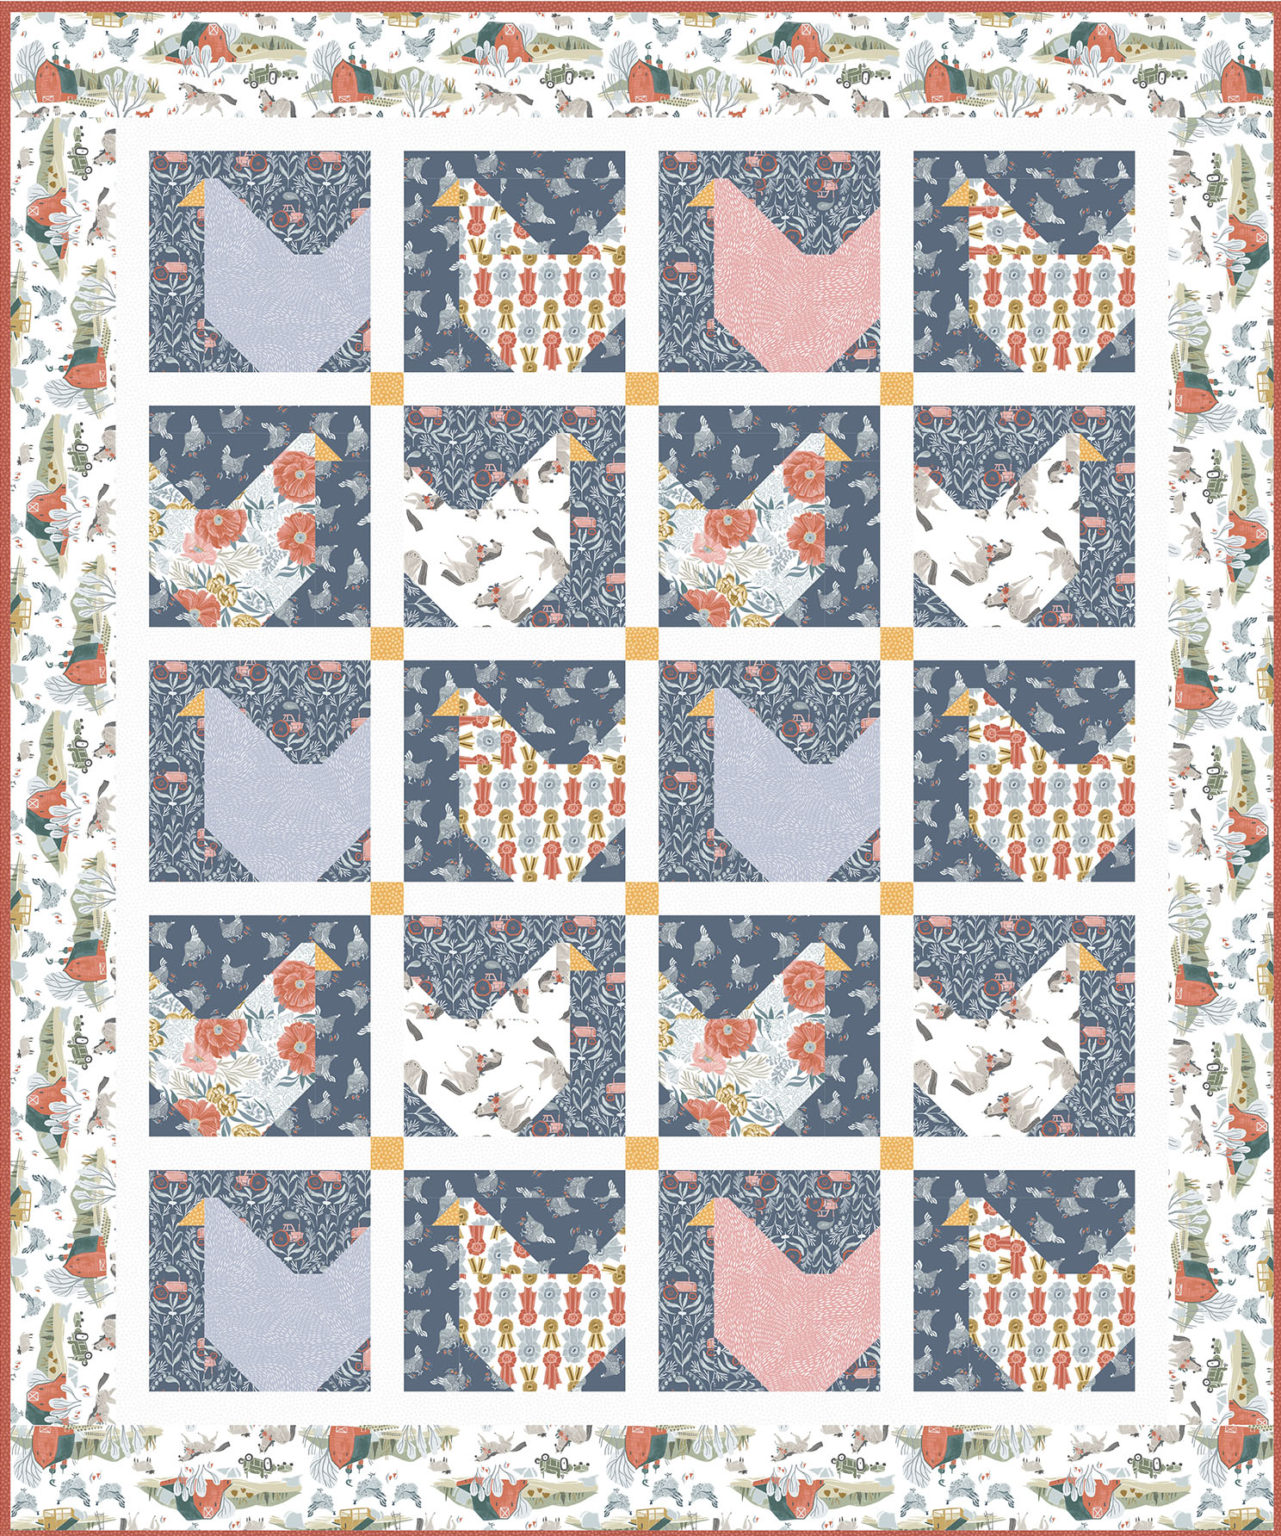 flock party chicken quilt patterns